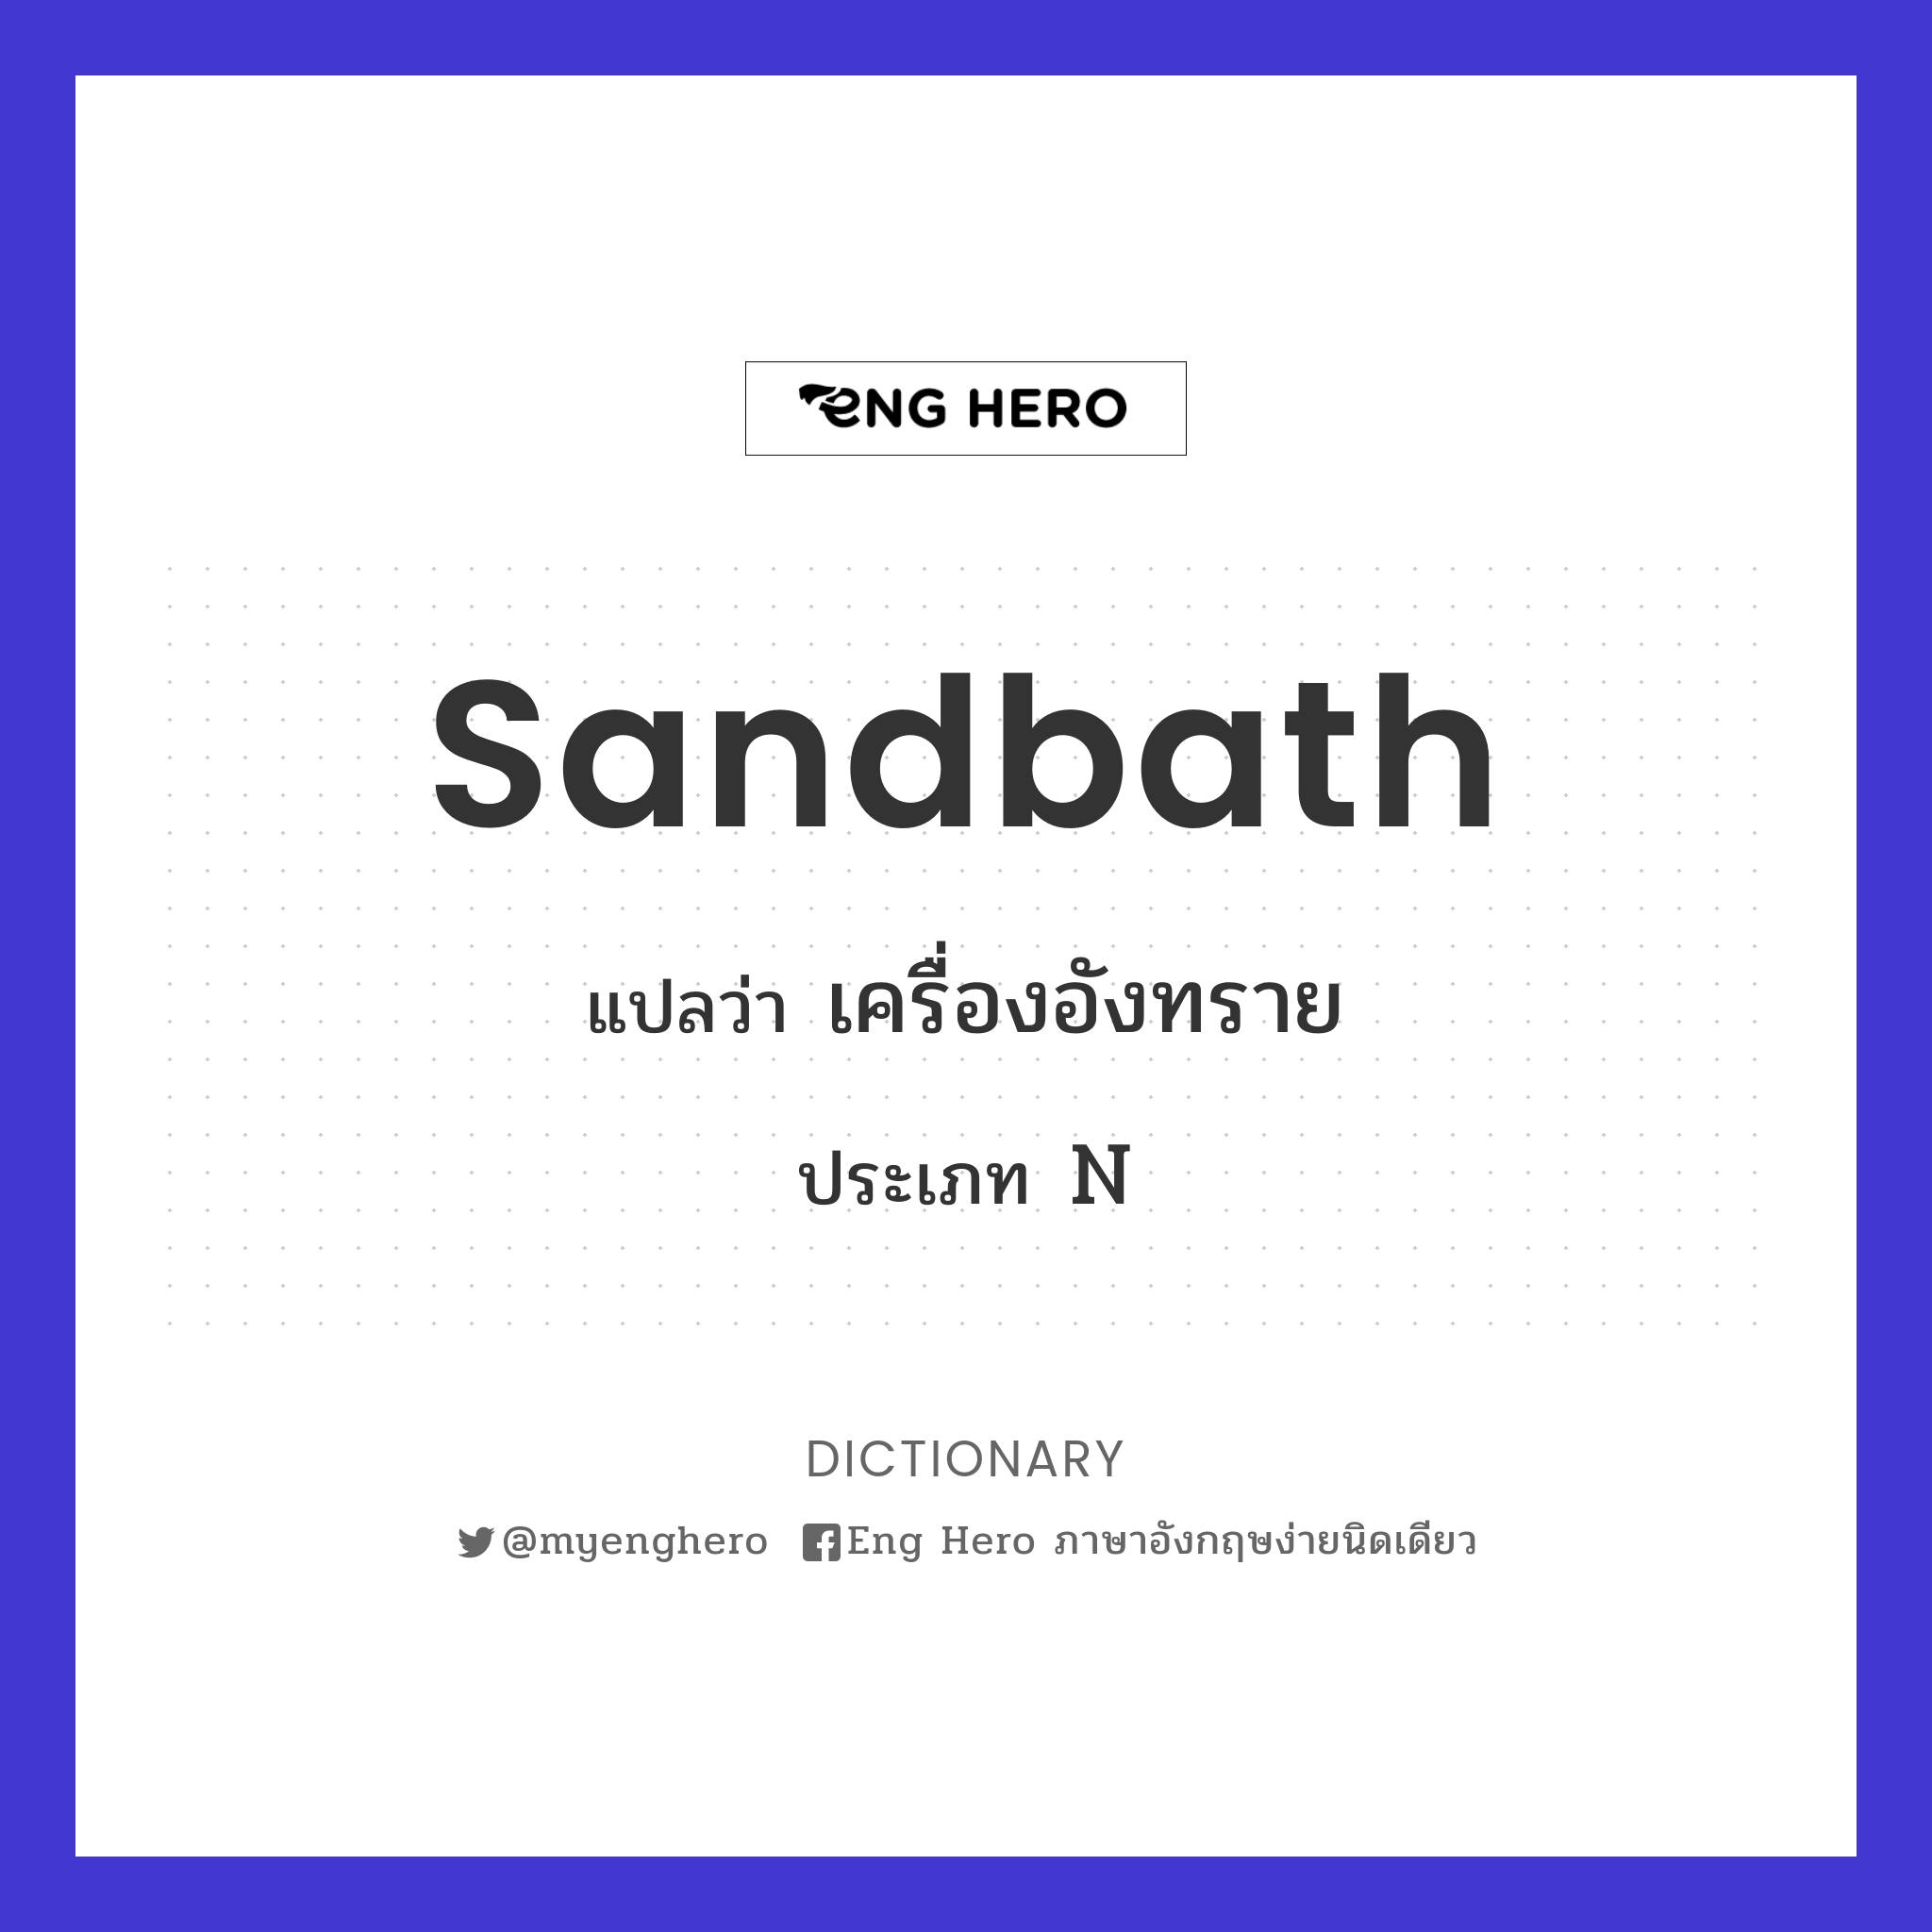 sandbath